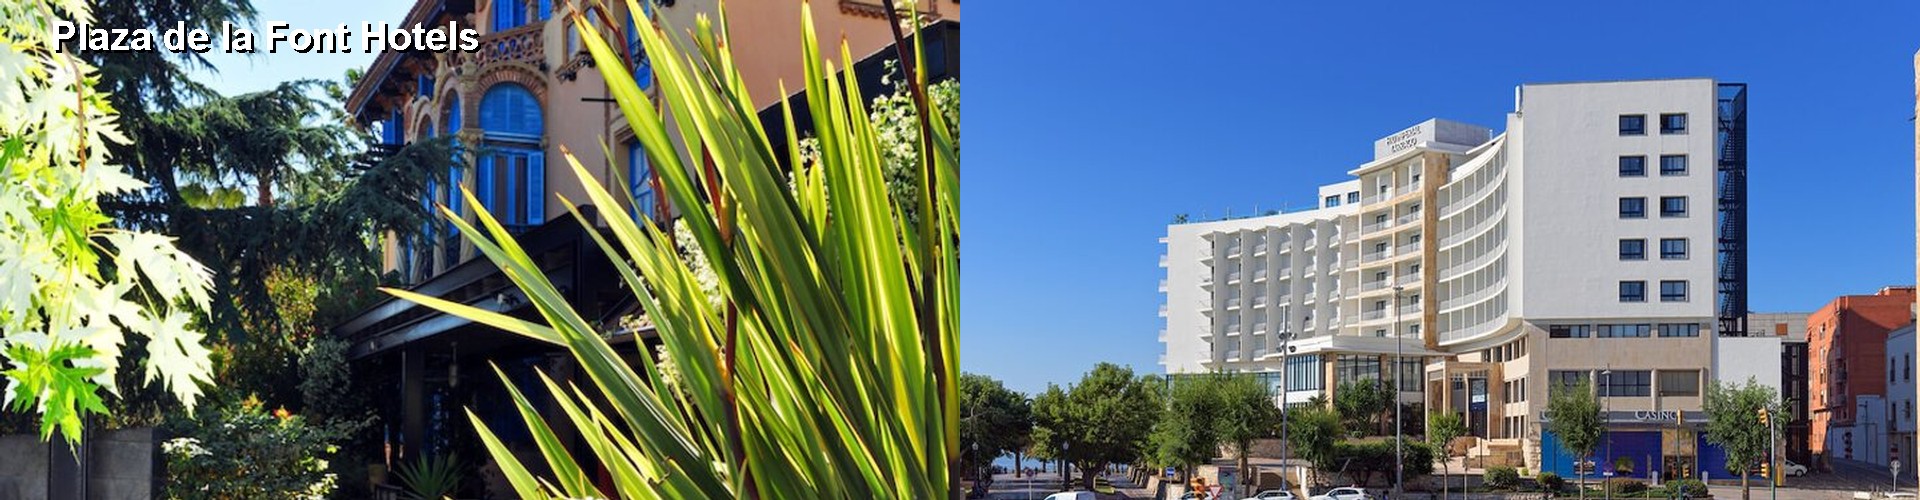 5 Best Hotels near Plaza de la Font